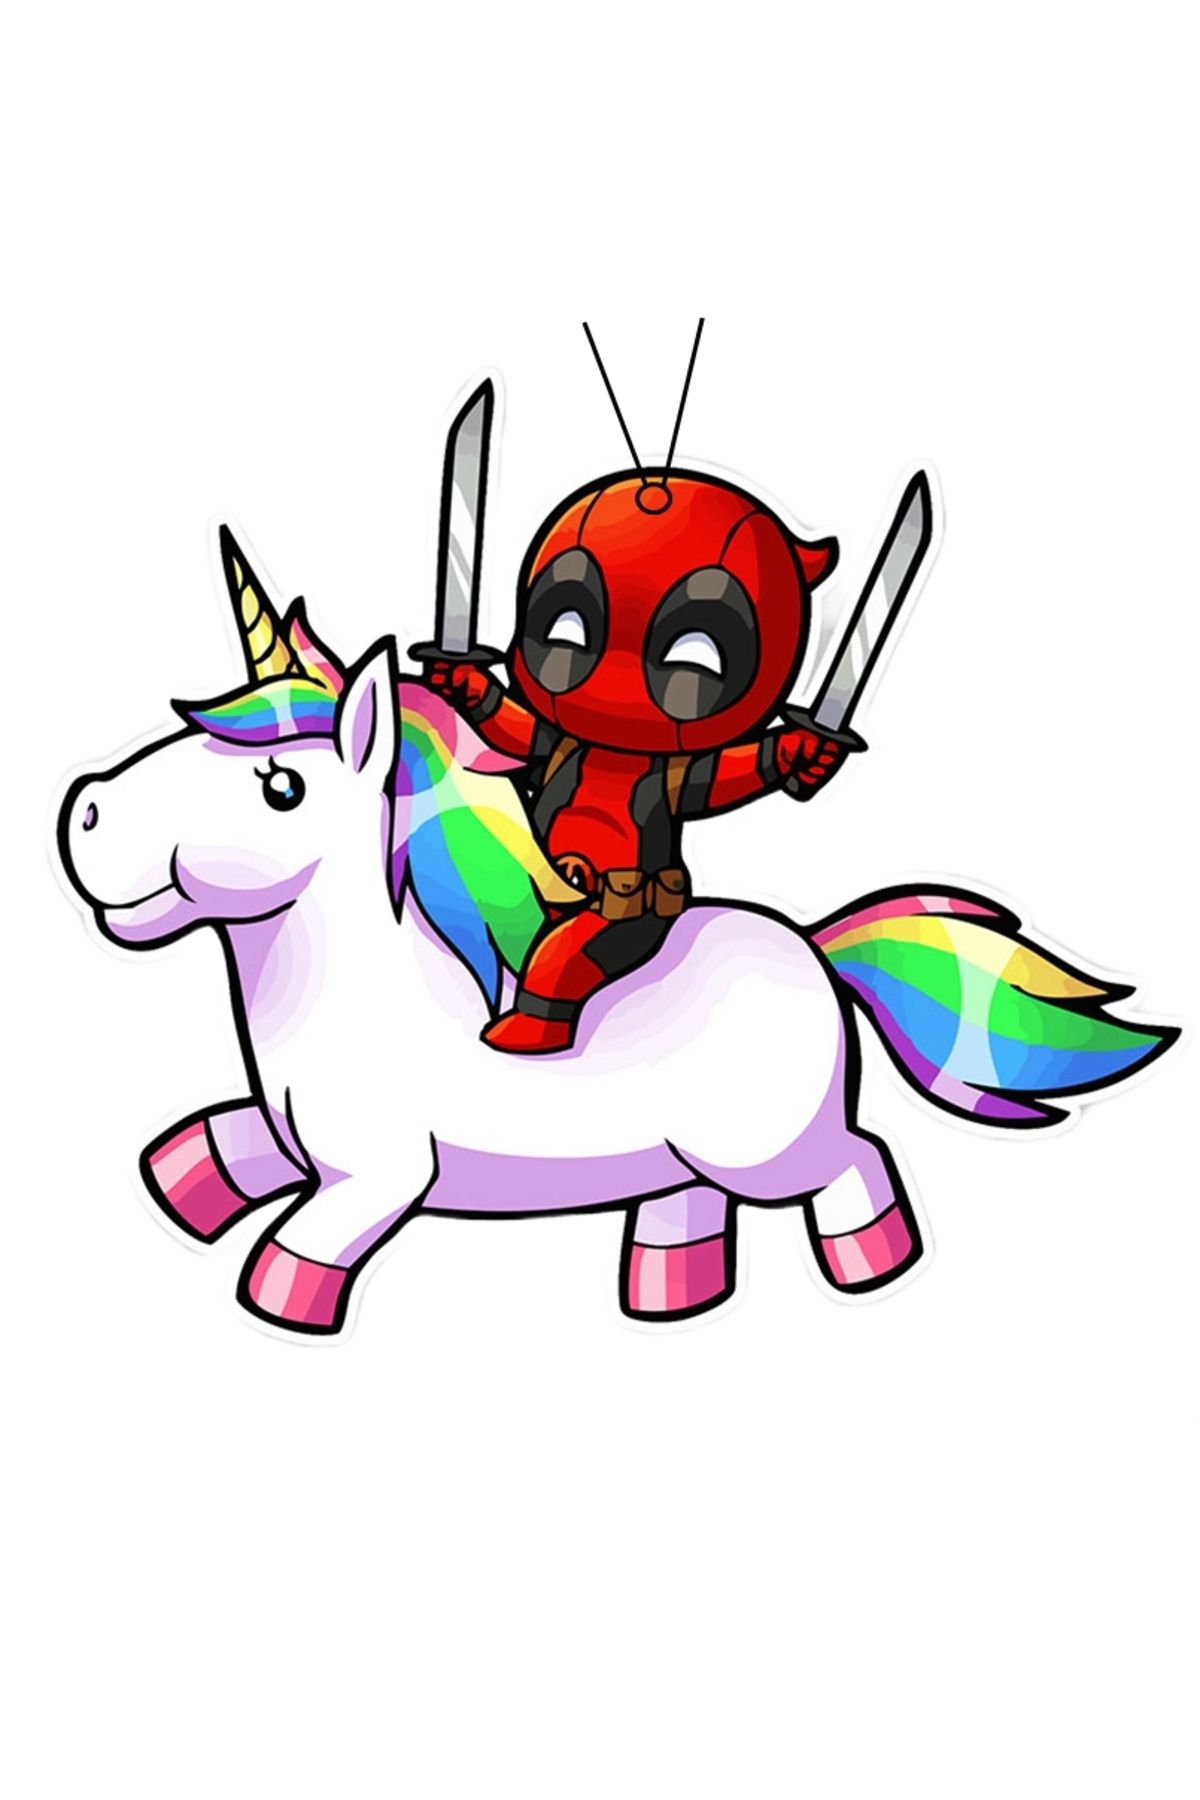 Hanata Aksesuar Deadpool Unicorn Tasarımlı Dekoratif Oto Araç Kokusu Ve Aksesuarı